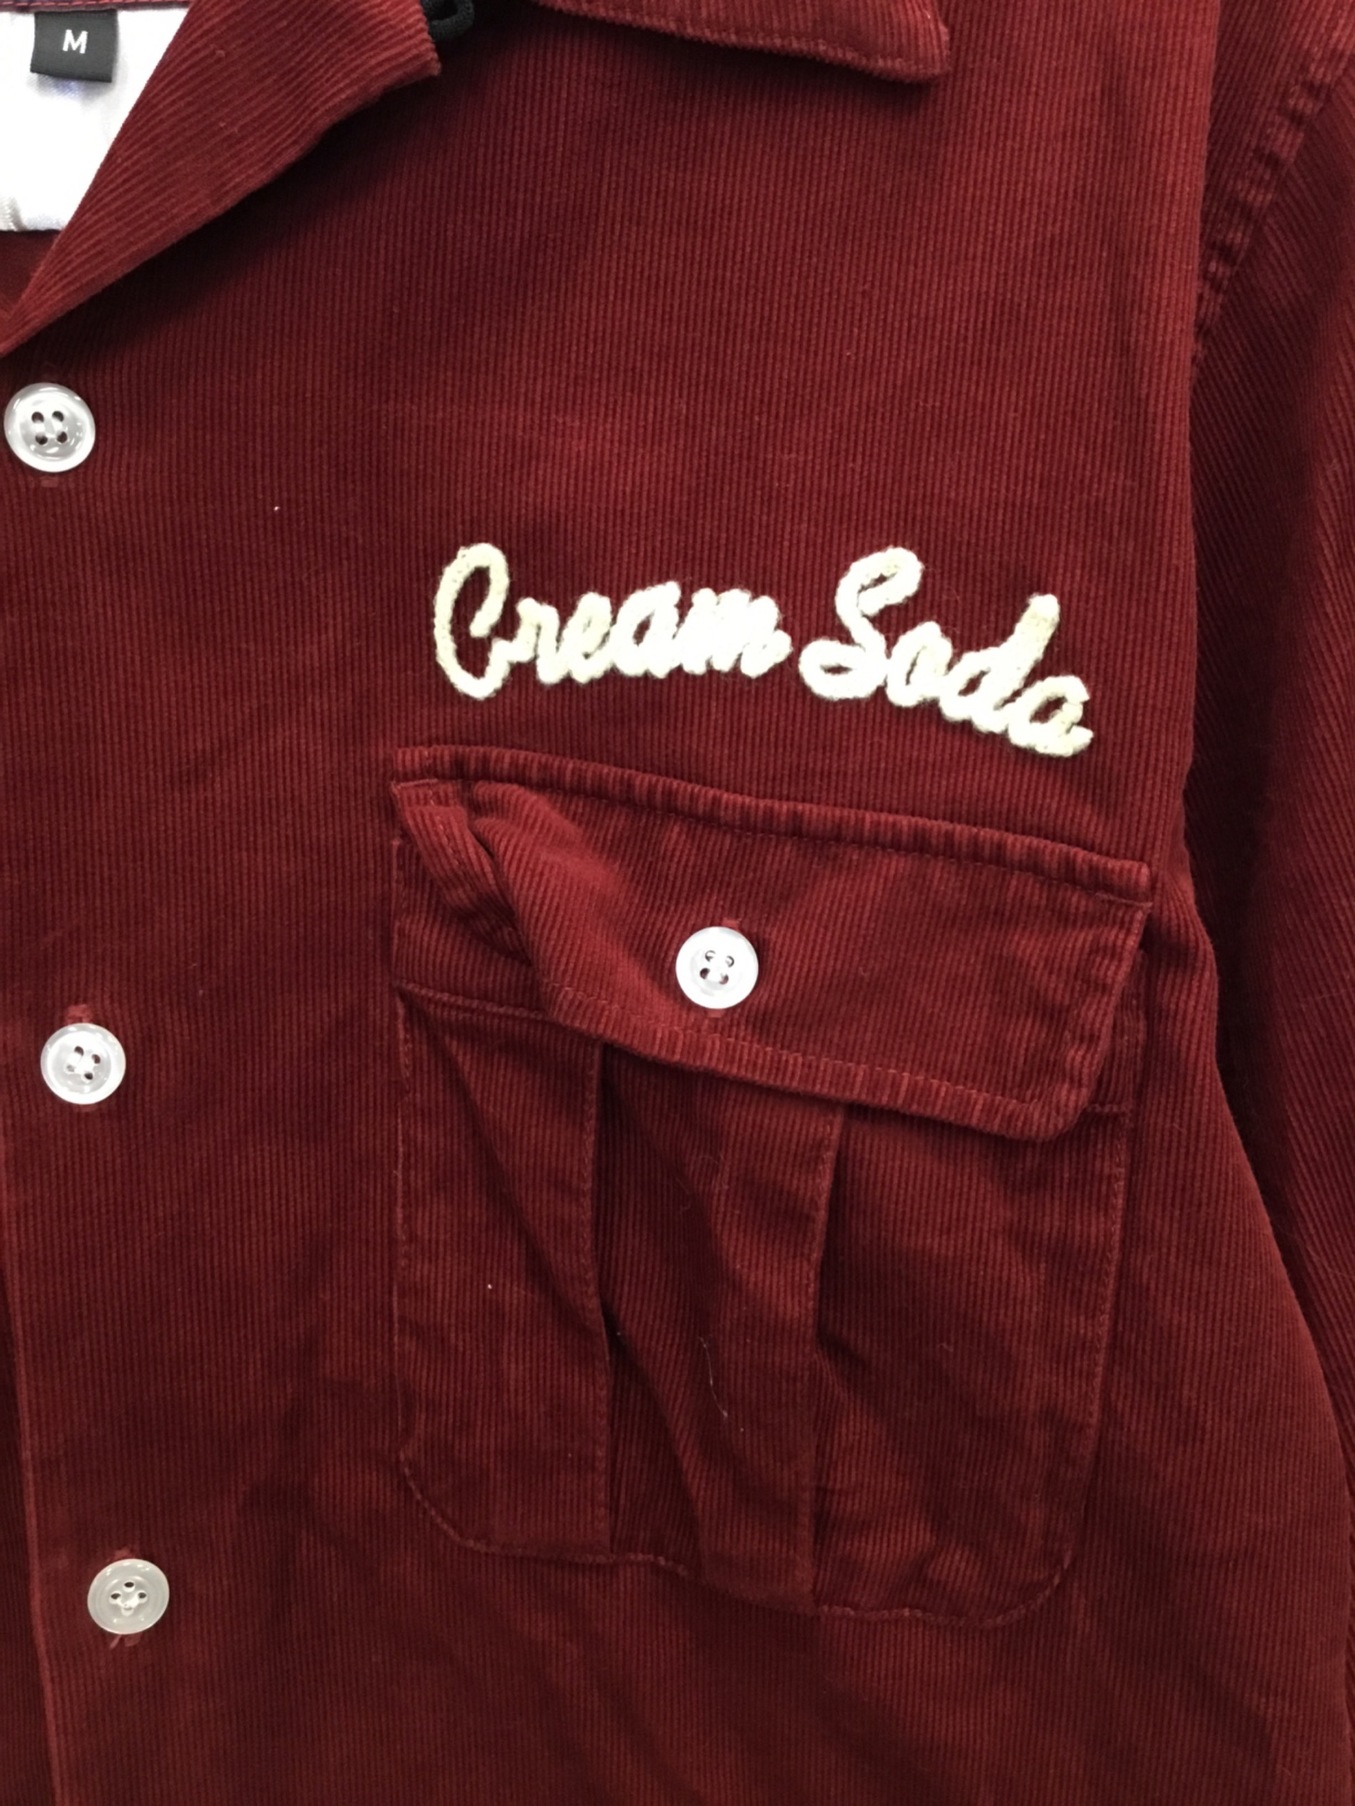 CREAM SODA (クリームソーダ) コーデュロイシャツ ワインレッド サイズ:M